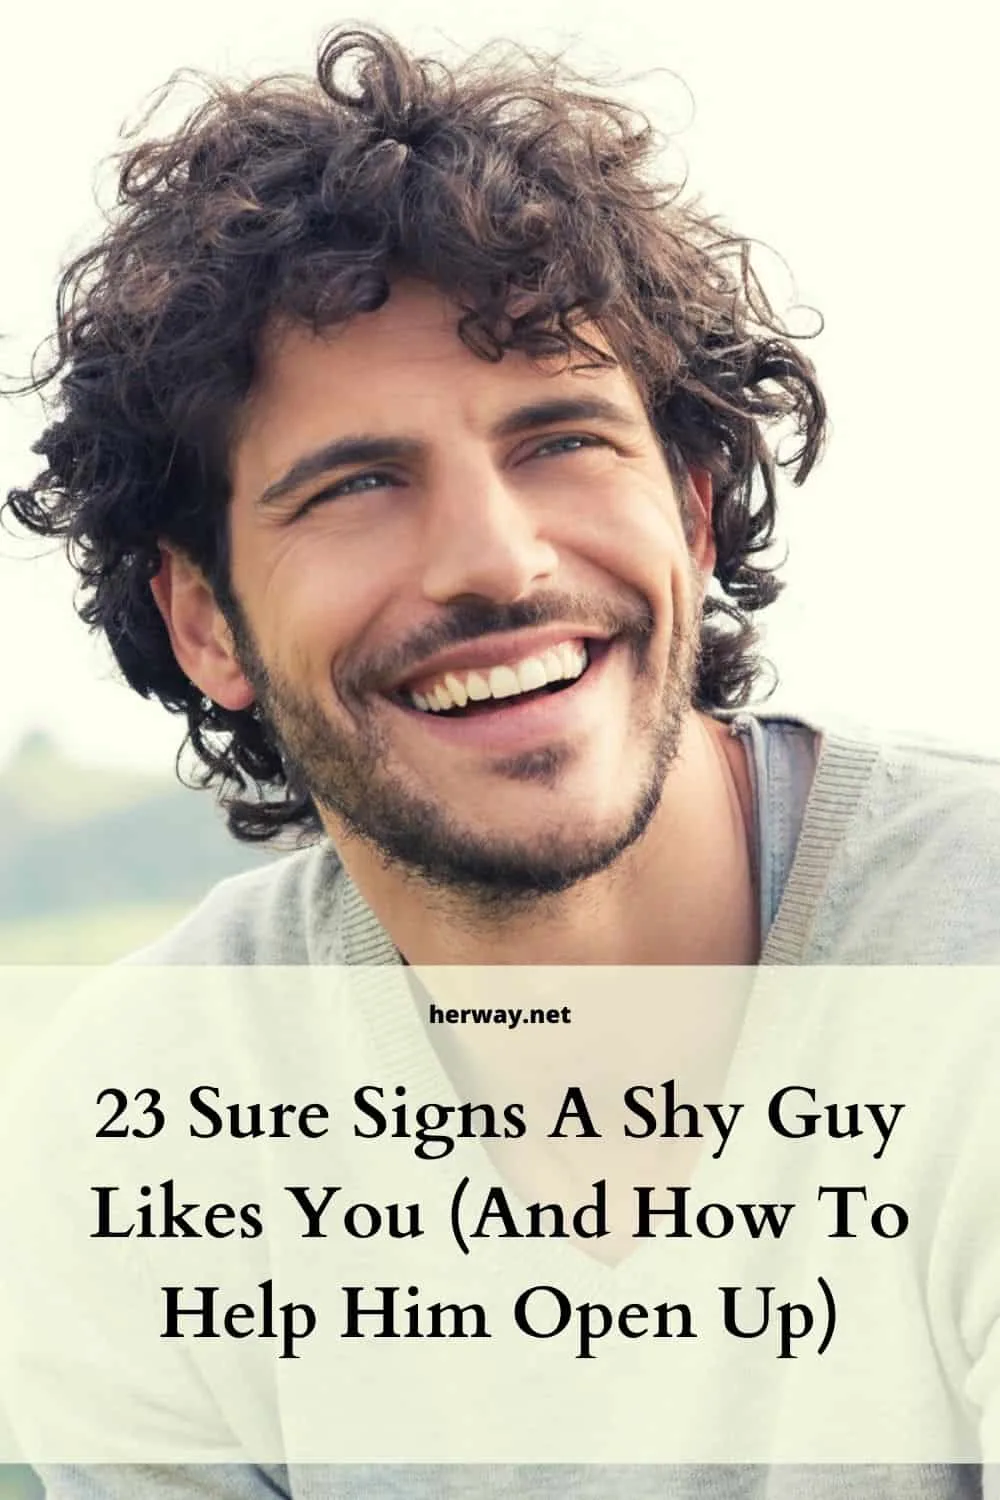 Dating tips for shy guys in Atlanta